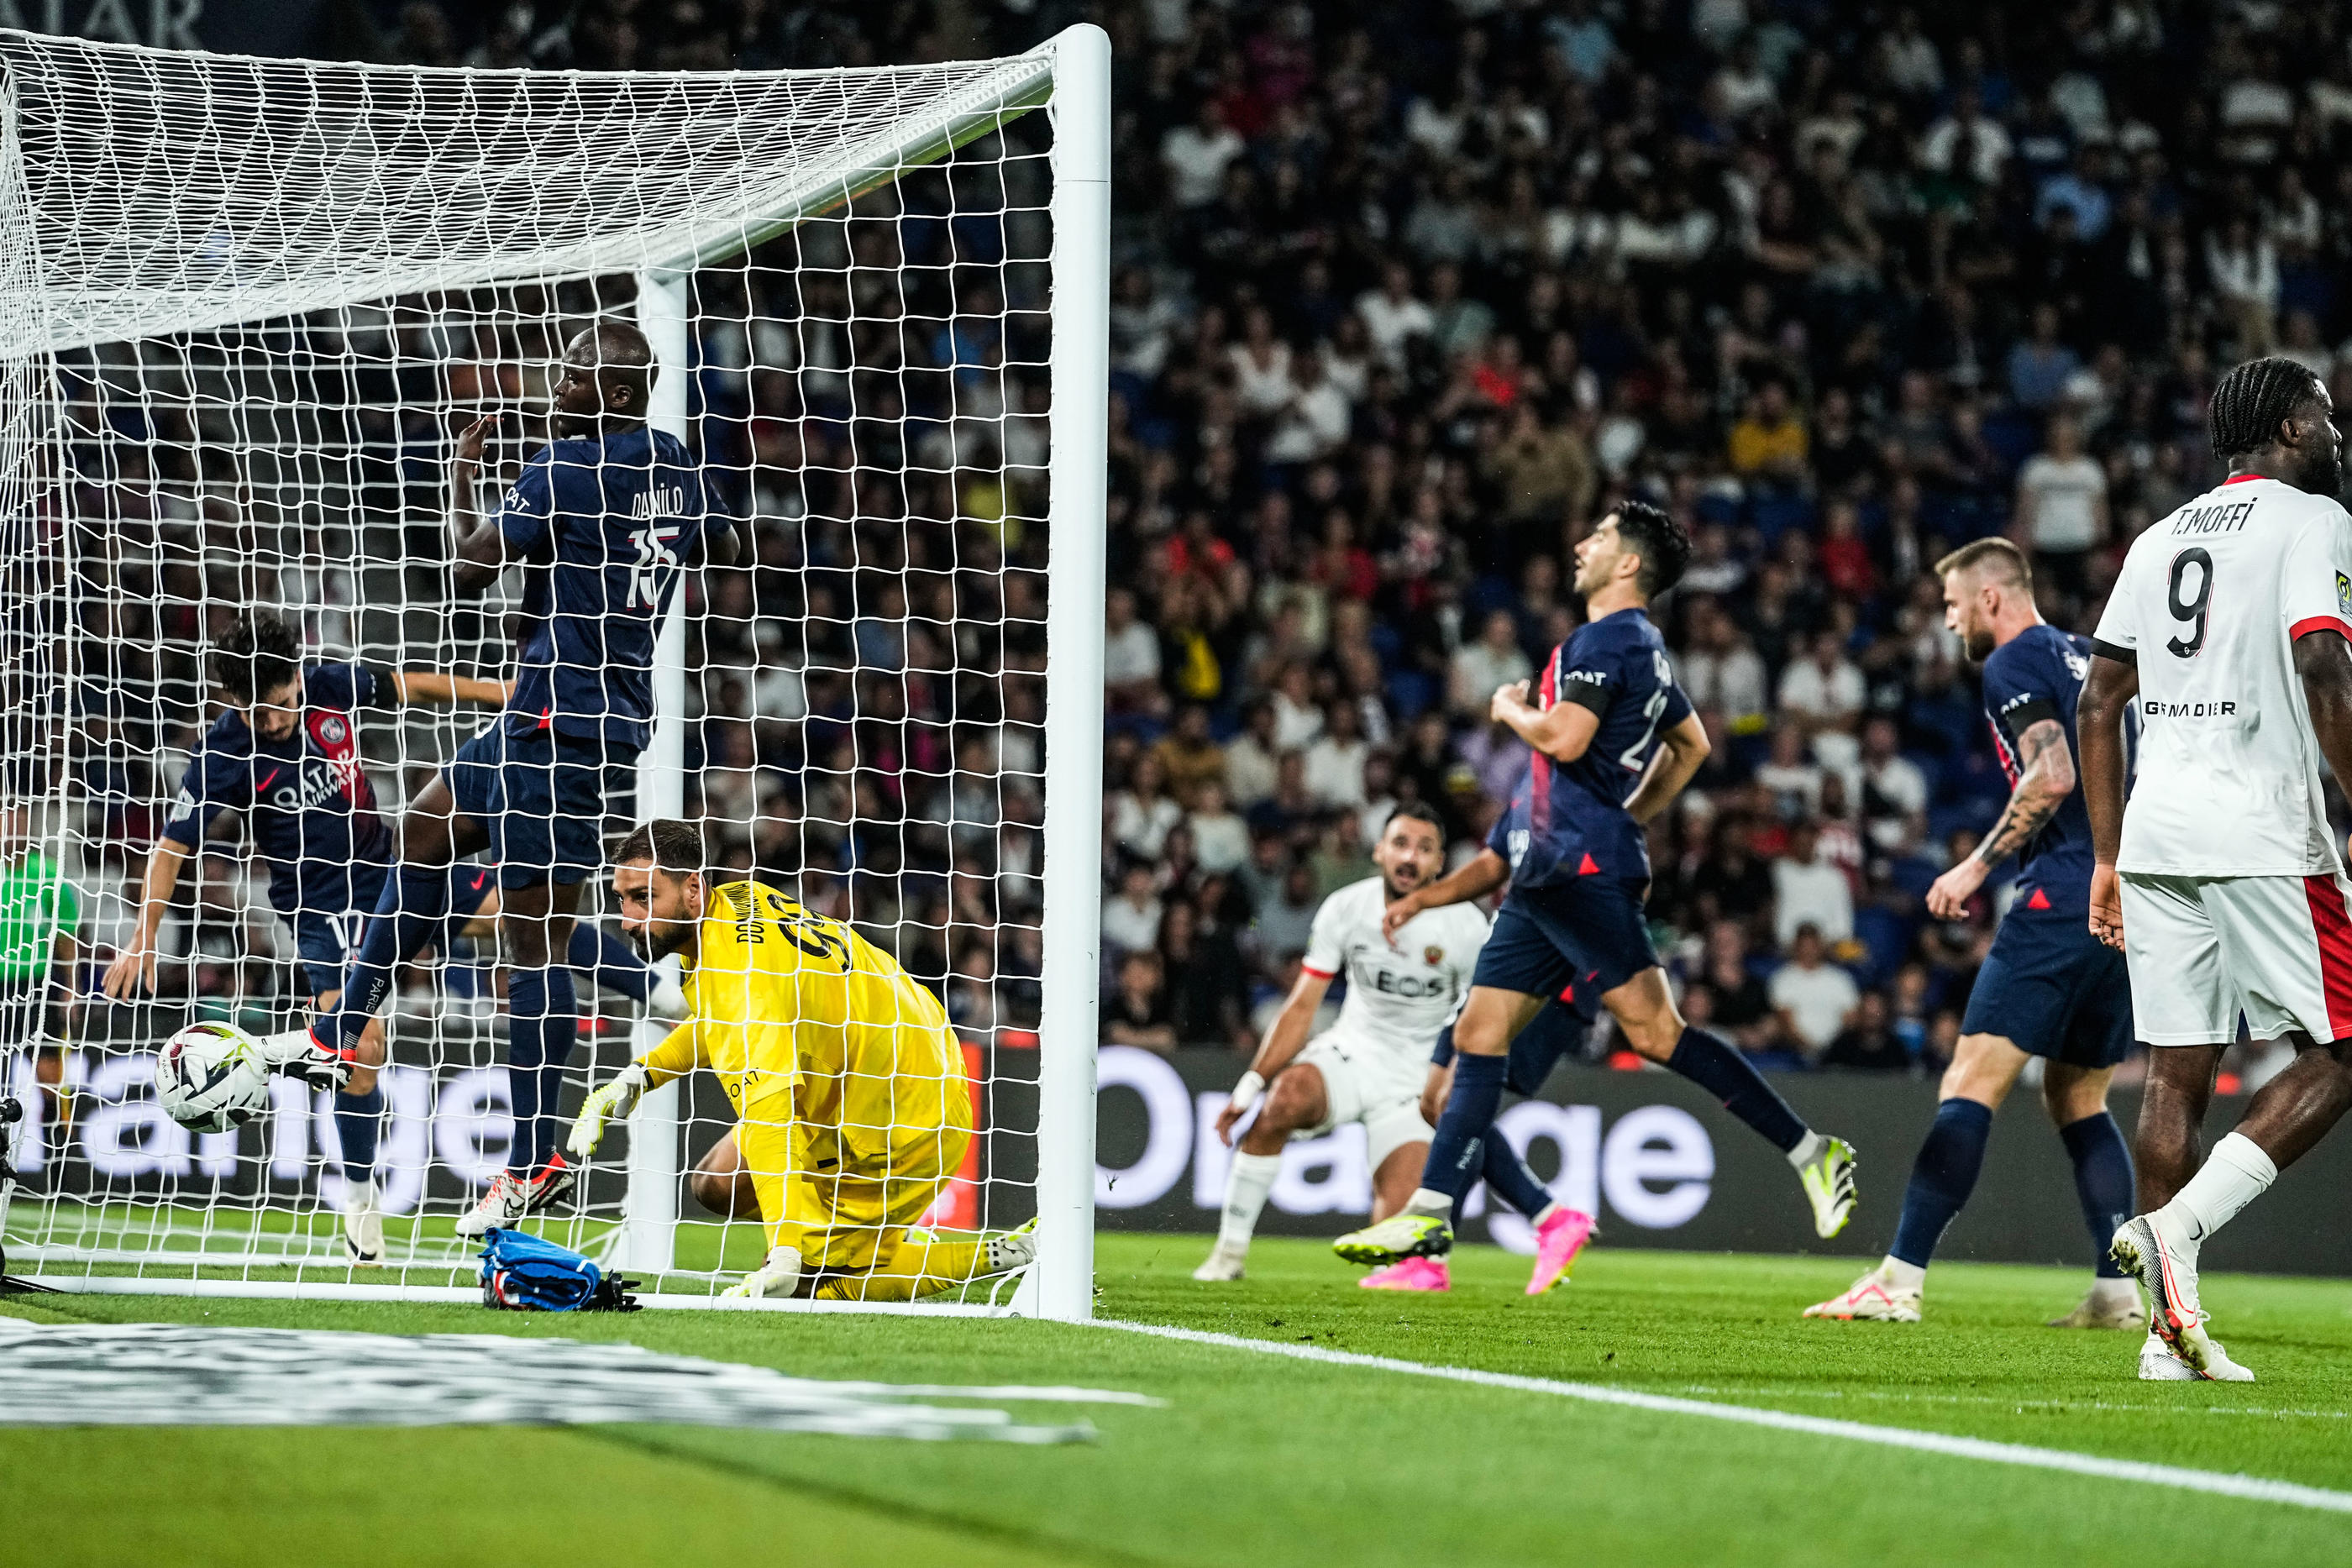 La défense parisienne a été en difficulté lors de la défaite du PSG contre Nice ce vendredi au Parc des Princes. Icon Sport/Hugo Pfeiffer